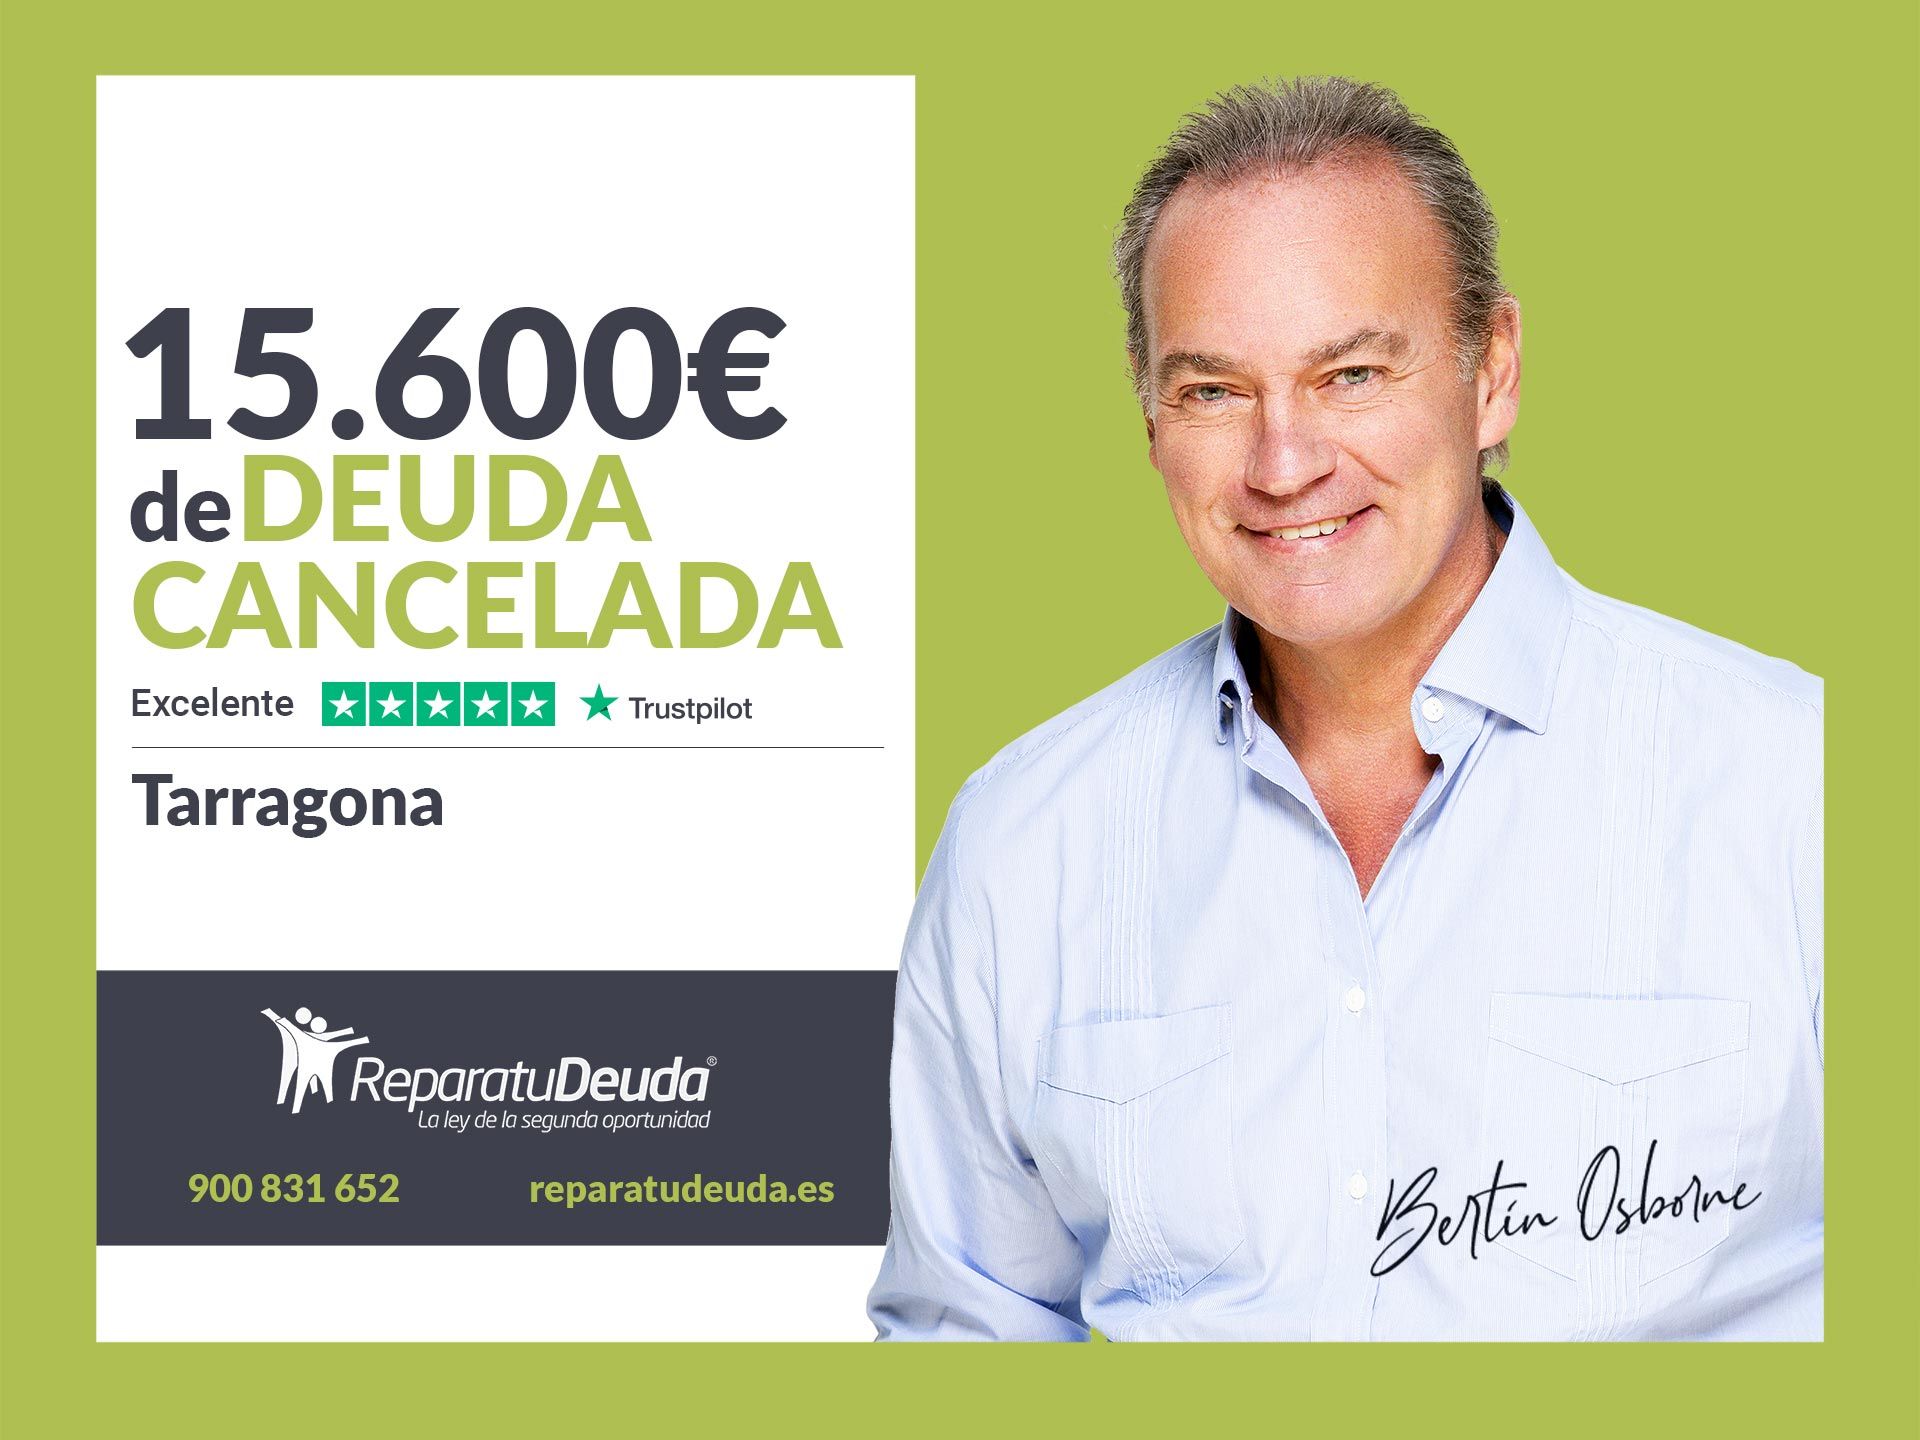 Repara tu Deuda Abogados cancela 15.600? en Tarragona (Catalunya) con la Ley de Segunda Oportunidad